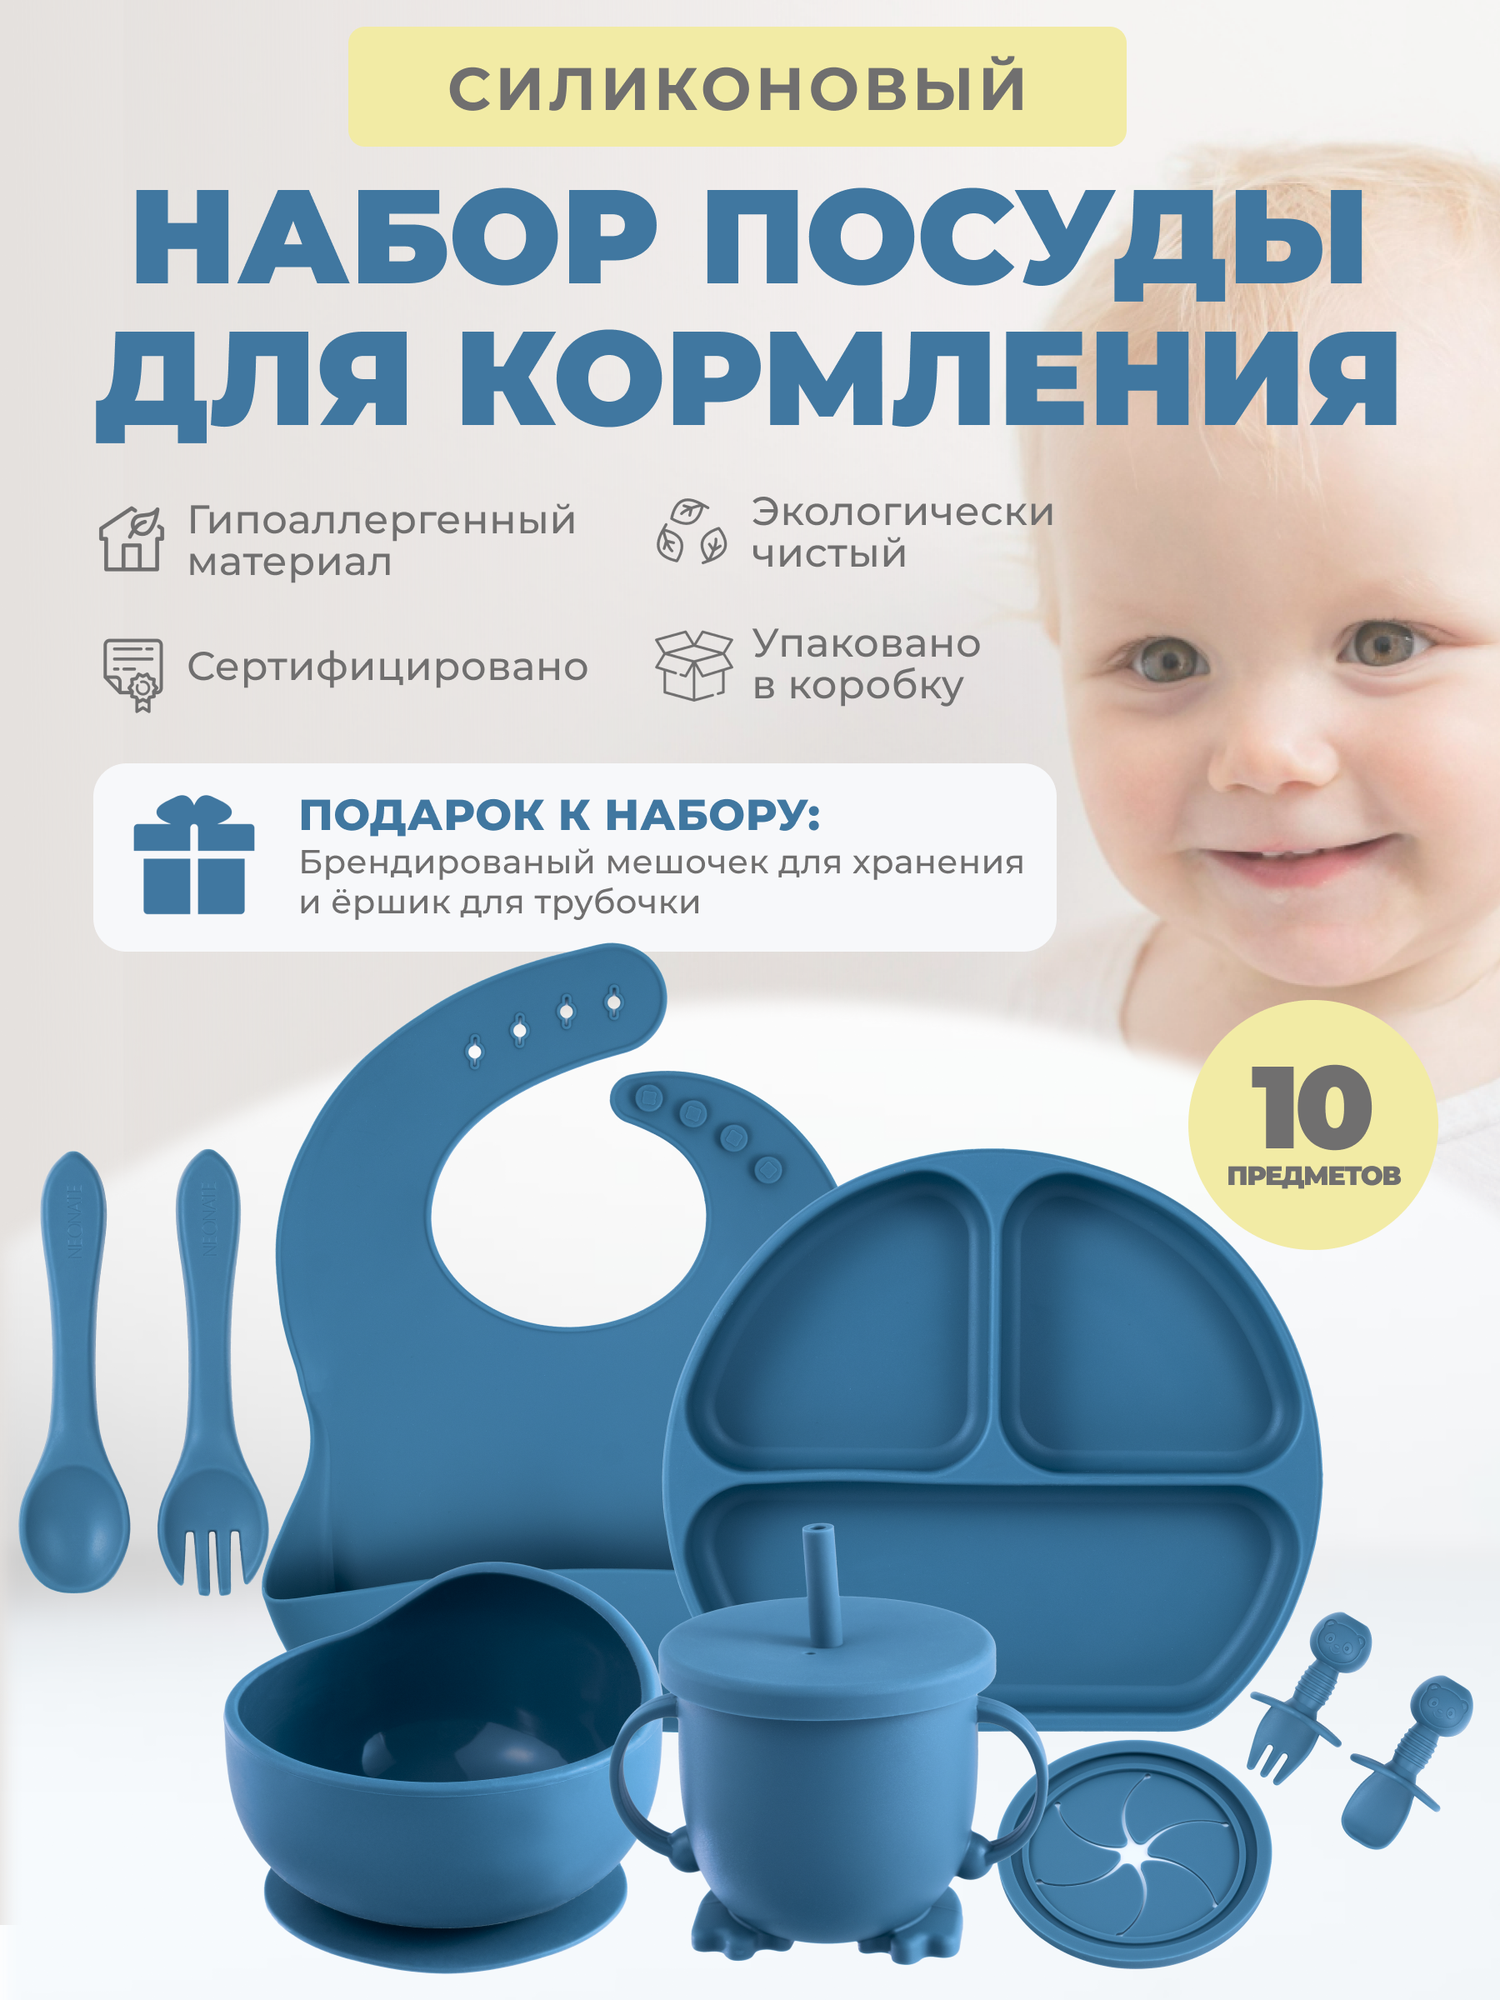 Детский силиконовый набор посуды для кормления ребёнка 10 предметов